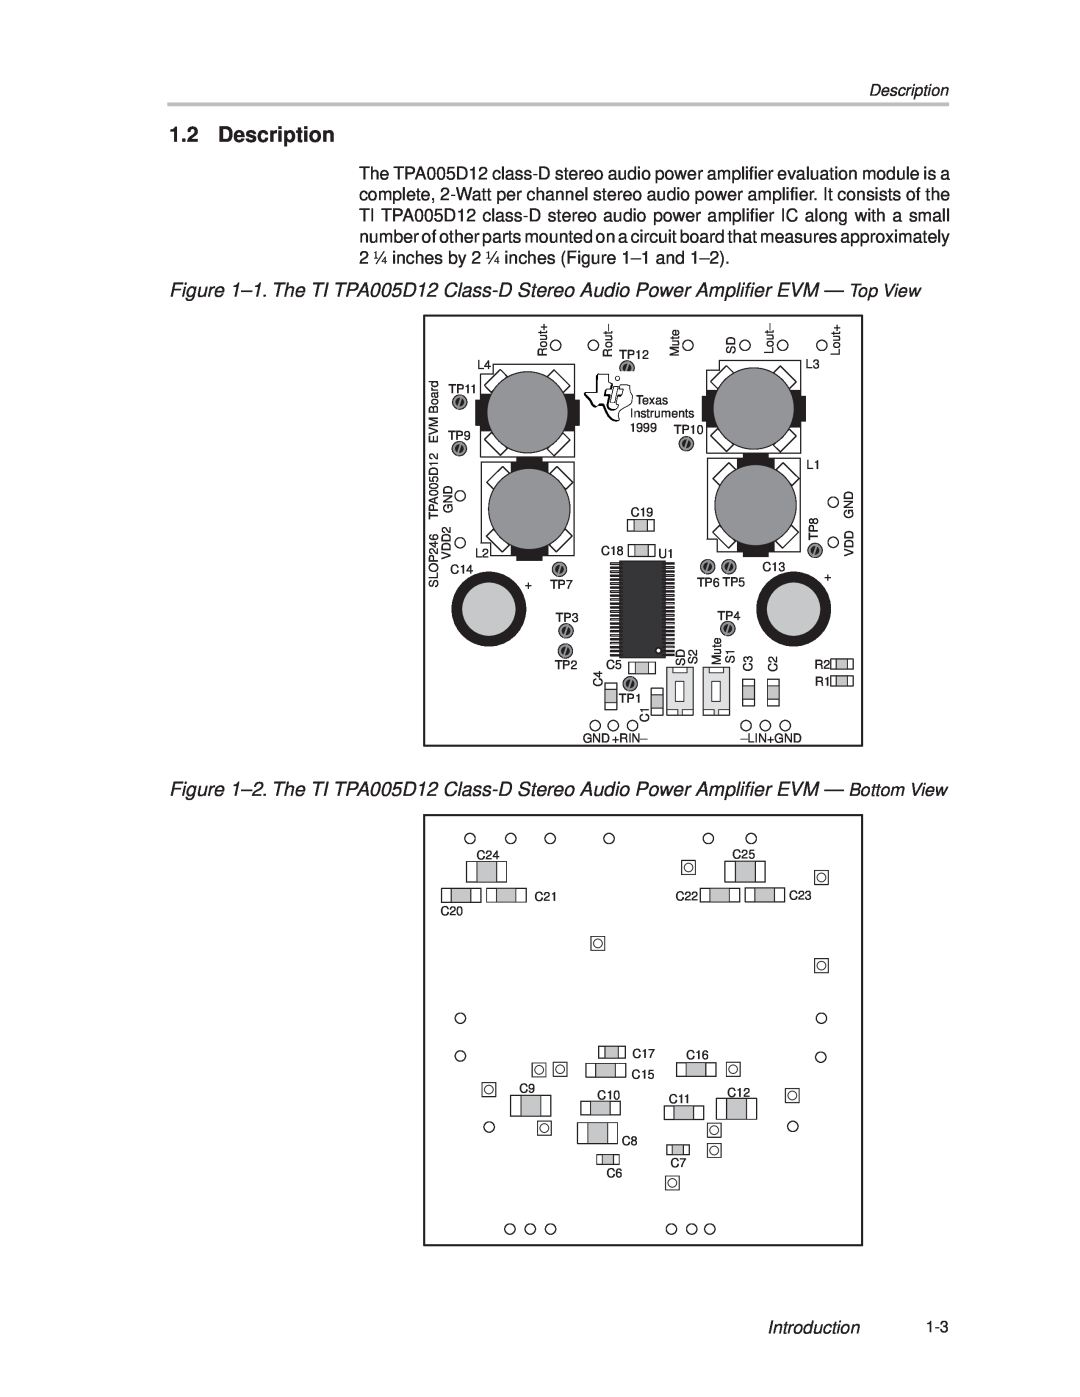 Texas Instruments TPA005D12 manual Description 